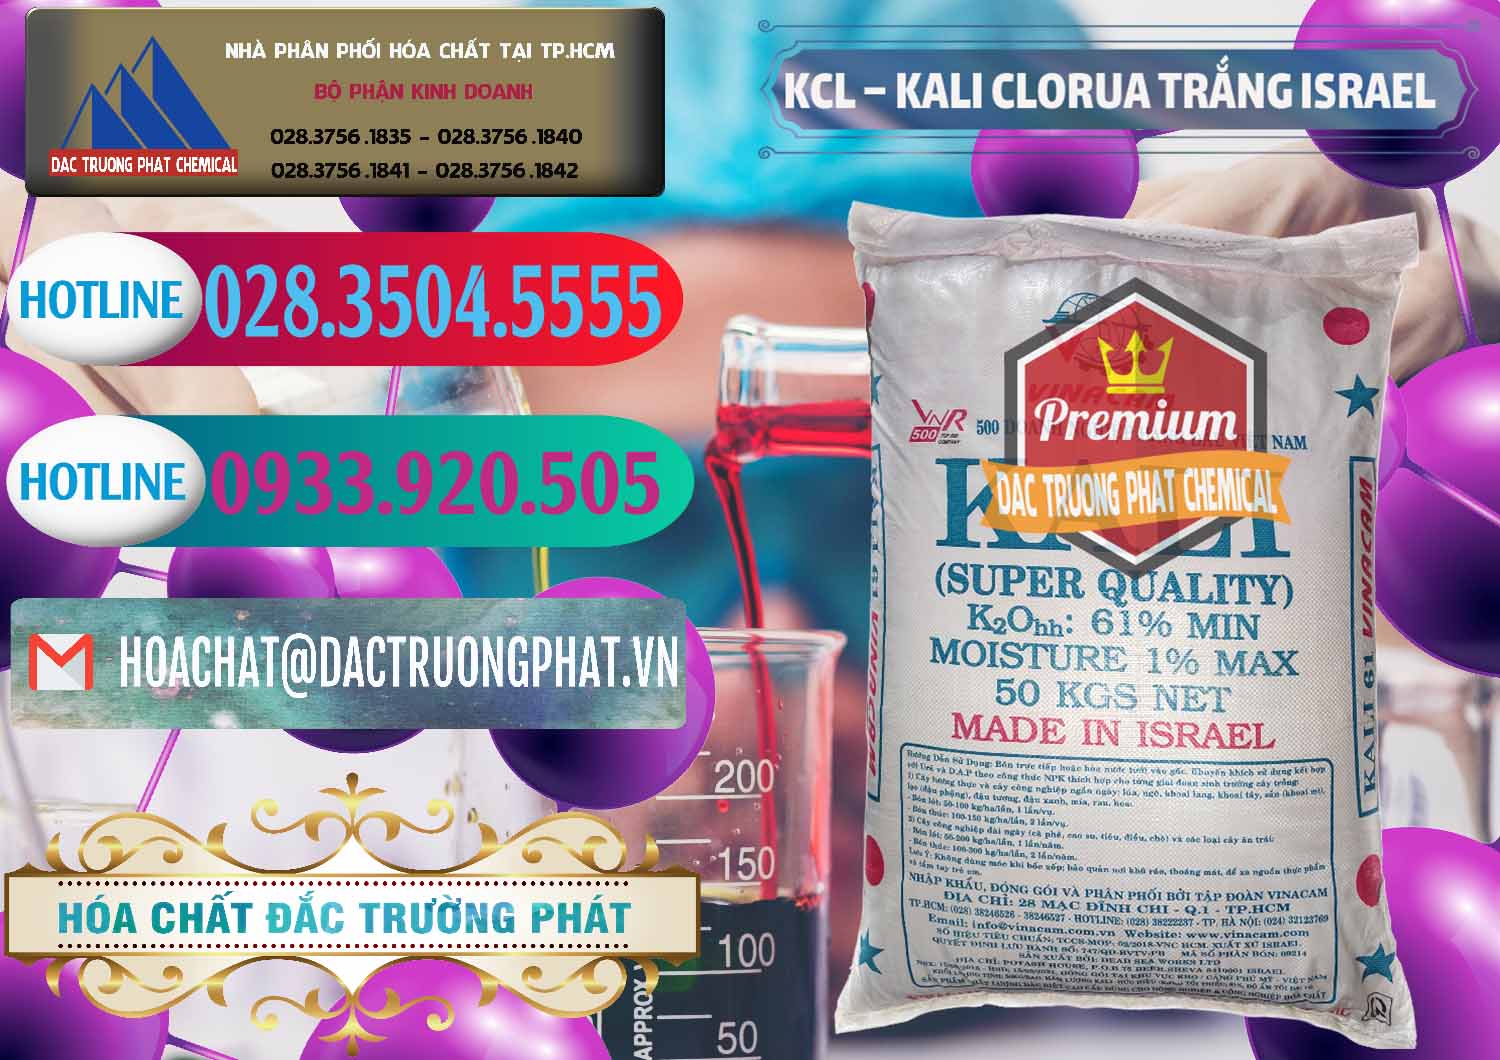 Nơi kinh doanh & bán KCL – Kali Clorua Trắng Israel - 0087 - Cty chuyên nhập khẩu và cung cấp hóa chất tại TP.HCM - truongphat.vn